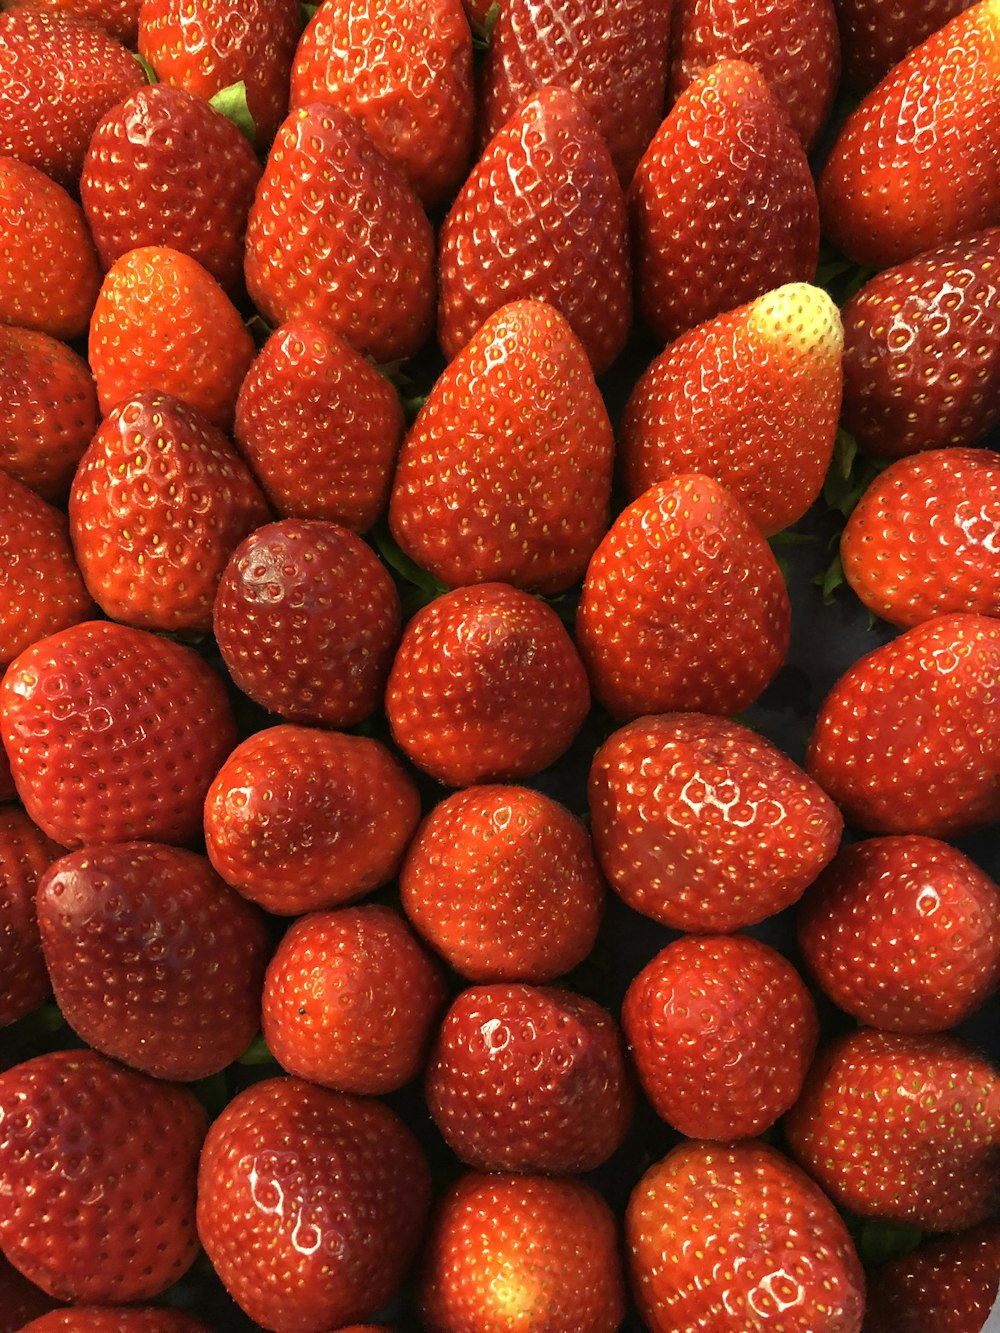 Más de 100 imágenes de frutas | Descargar imágenes gratis en Unsplash